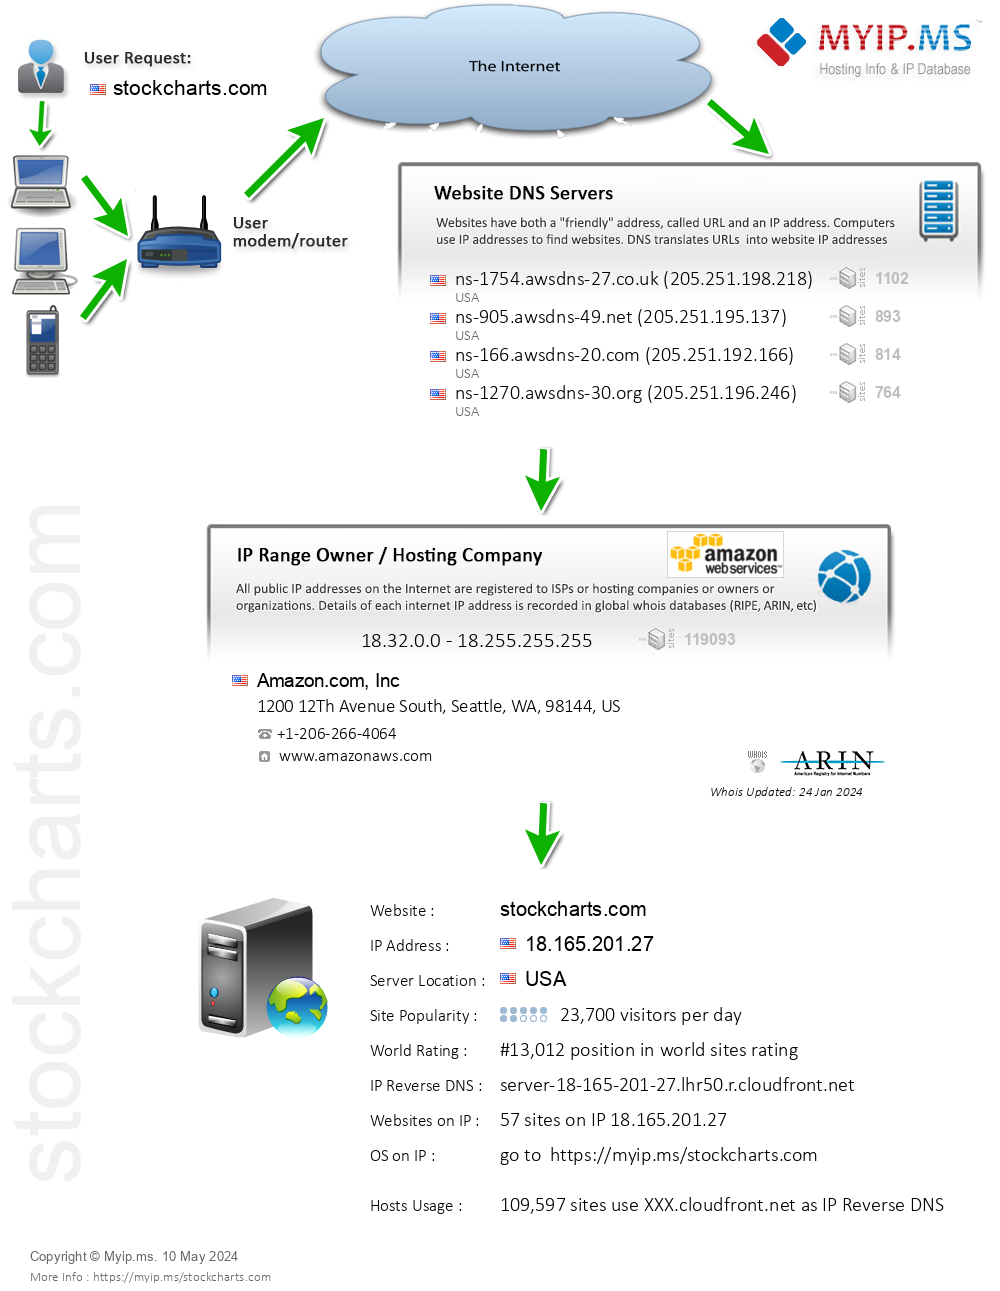 Stockcharts.com - Website Hosting Visual IP Diagram